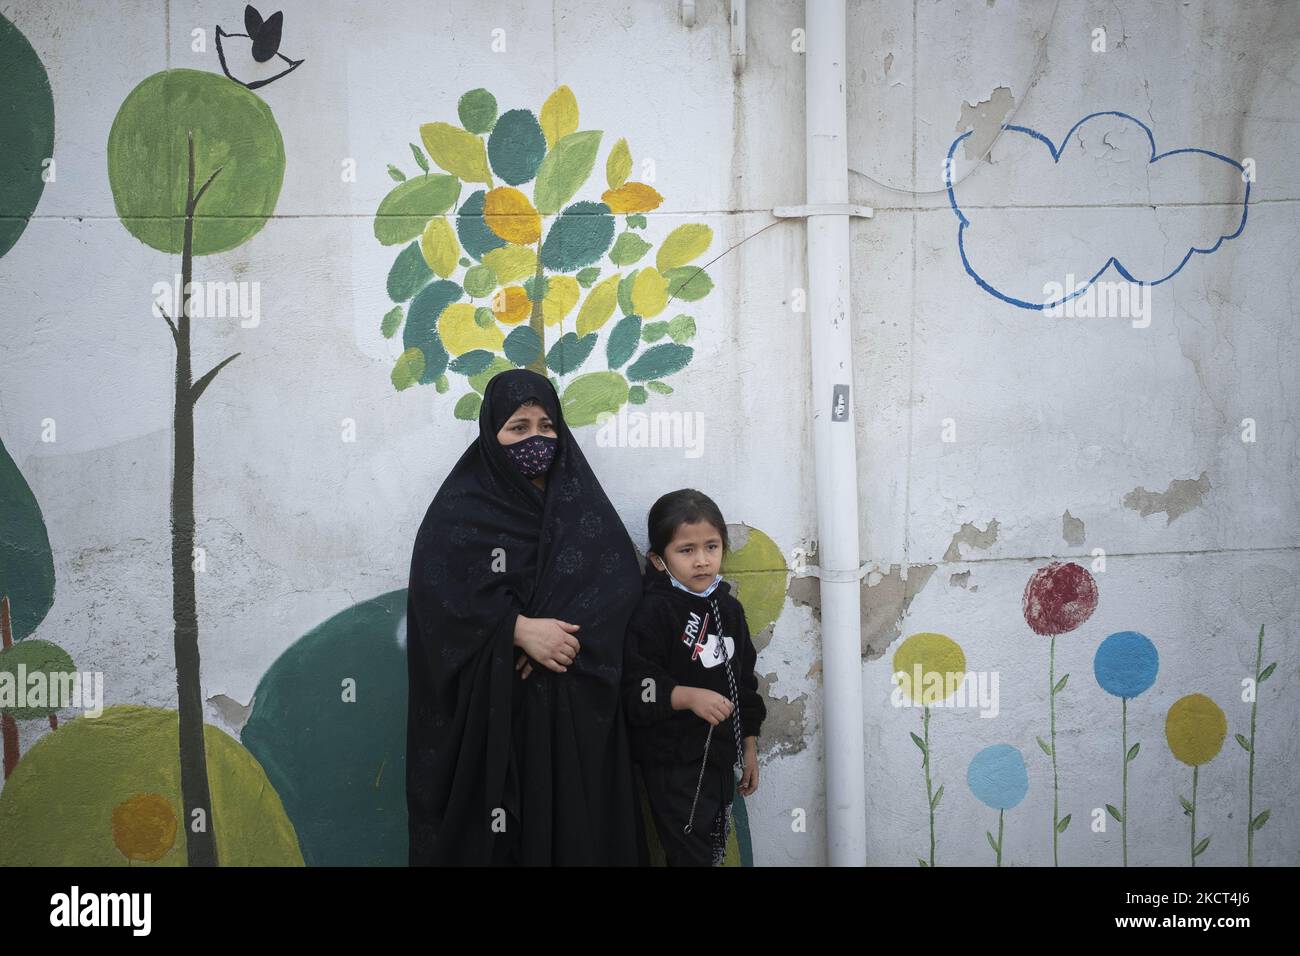 Una donna rifugiata afghana e la sua figlia si distinguono dalla scuola di Farhang nel primo giorno del nuovo anno accademico? Nel sud di Teheran il 1 novembre 2021. La scuola di Farhang è stata fondata nel 2000 dal rifugiato afgano Nader Mousavi che si è laureato in sociologia presso l'Università di Teheran, per i bambini rifugiati afghani, E ora due anni dopo l’inizio dell’epidemia COVID-19 in Iran, dove la scuola operava a tempo parziale, ha iniziato a funzionare a tempo pieno e le scolaresche e gli scolari afghani possono frequentare la scuola. Le famiglie non devono pagare i soldi per le tasse scolastiche come Foto Stock